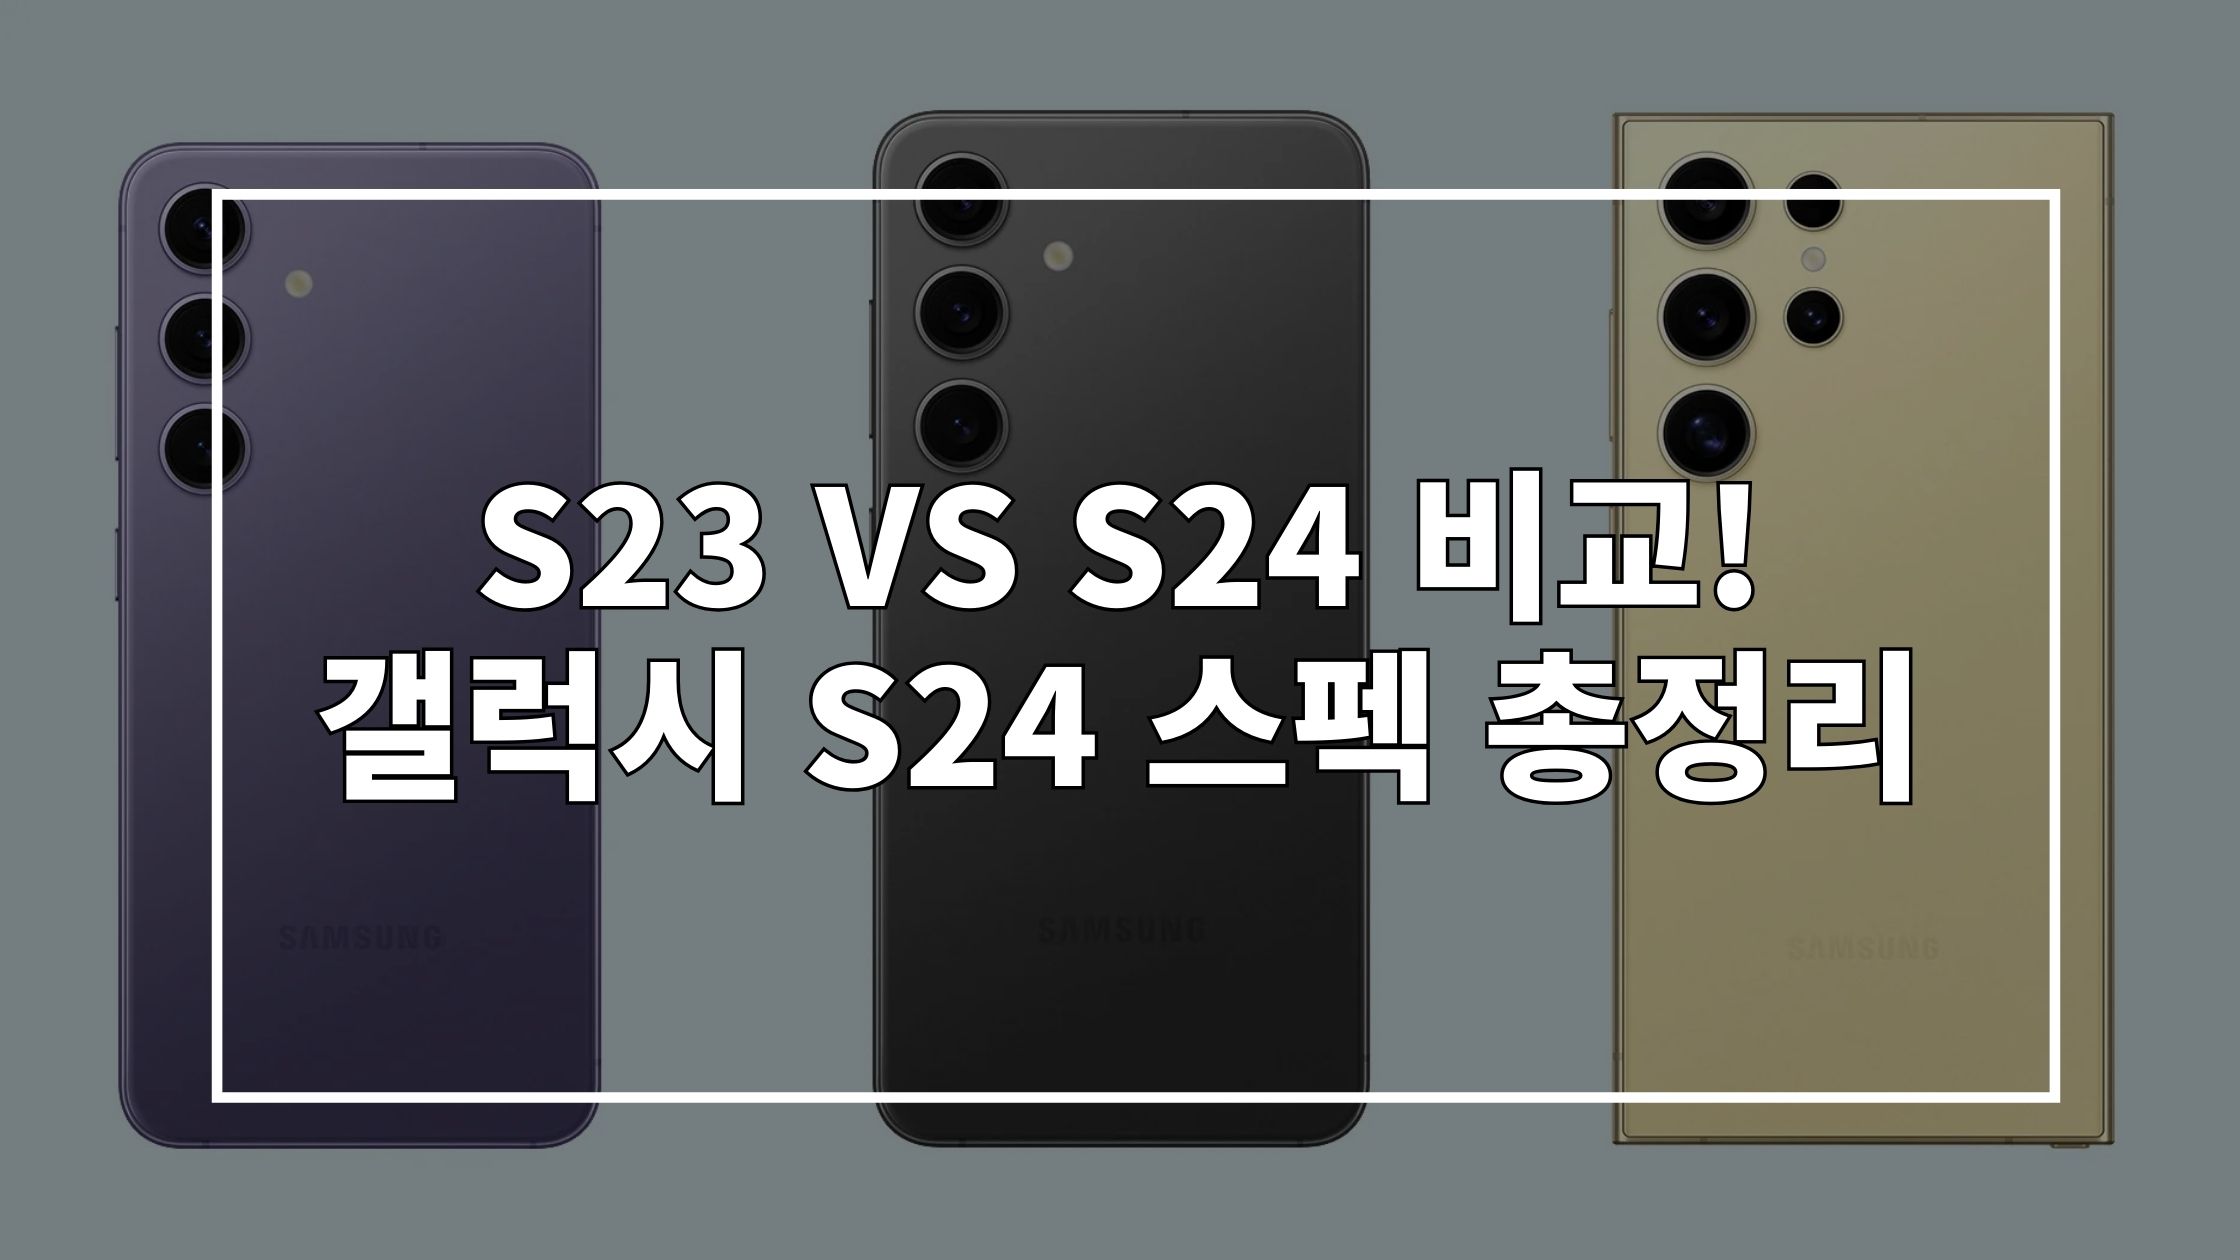 갤럭시 S24 시리즈 사진 위에 'S23 VS S24 비교! 갤럭시 S24 스펙 총정리'라고 쓰인 썸네일 이미지입니다.